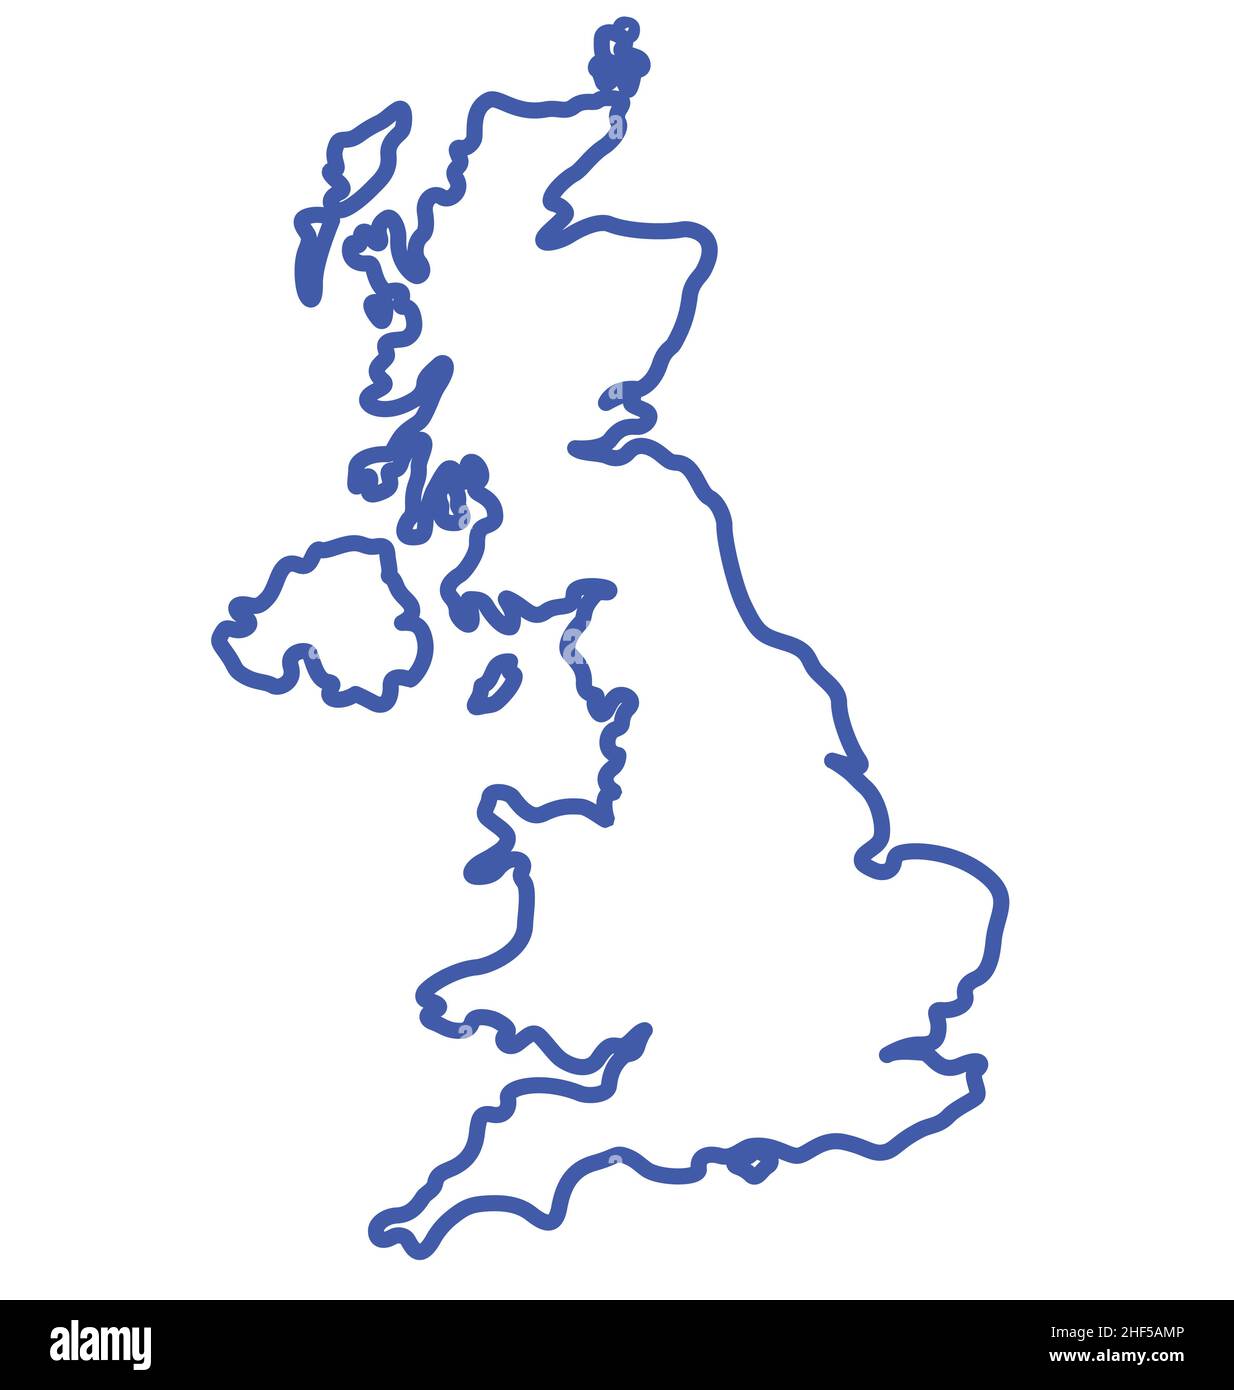 England Großbritannien vereinigtes Königreich Großbritannien Kartenform vereinfacht Umriss Vektor isoliert auf weißem Hintergrund Stock Vektor